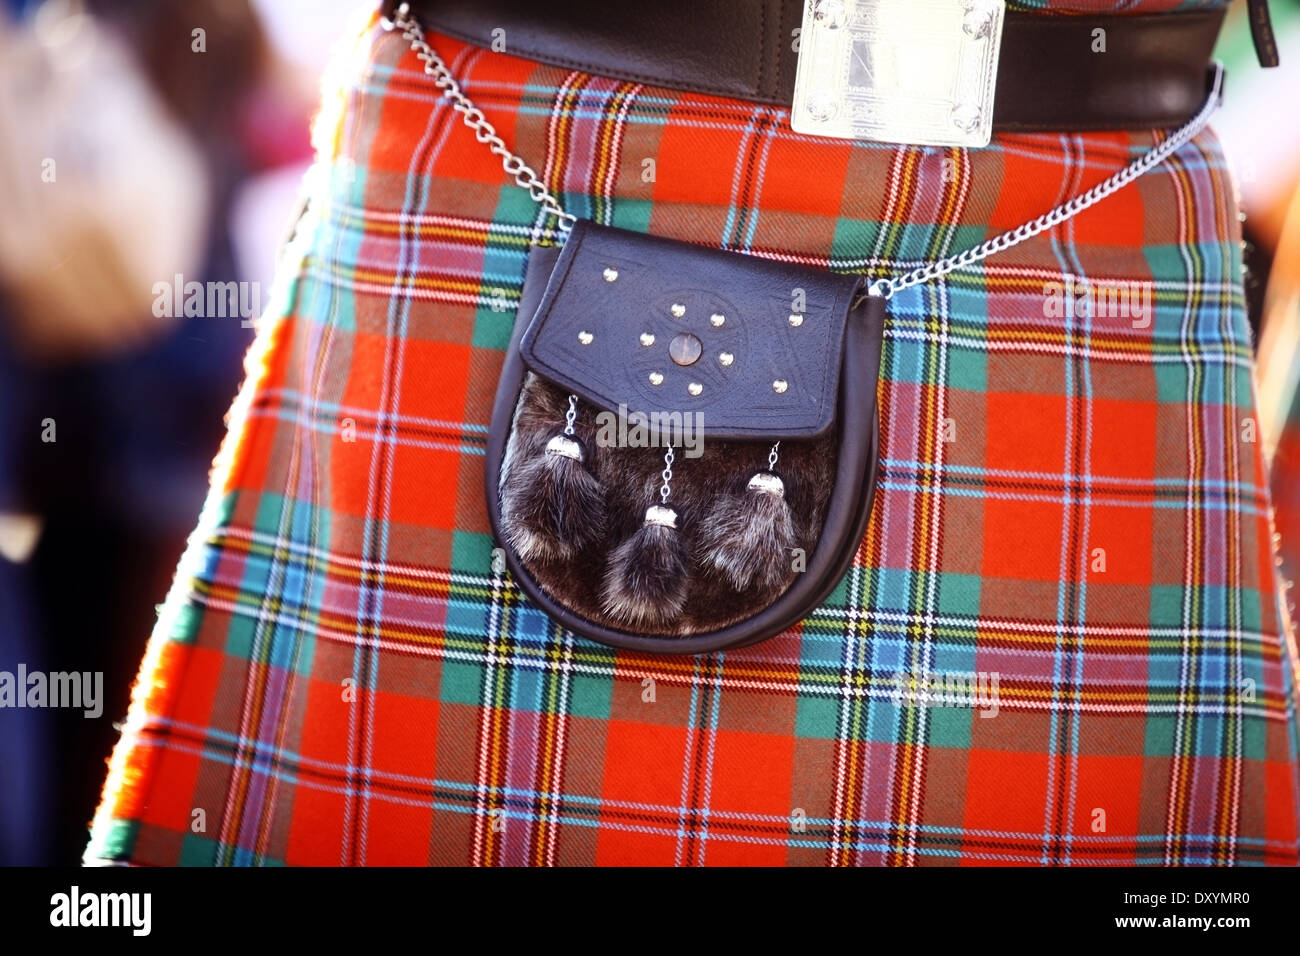 Dettaglio del colore di un tradizionale kilt scozzese, con un sacchetto. Foto Stock